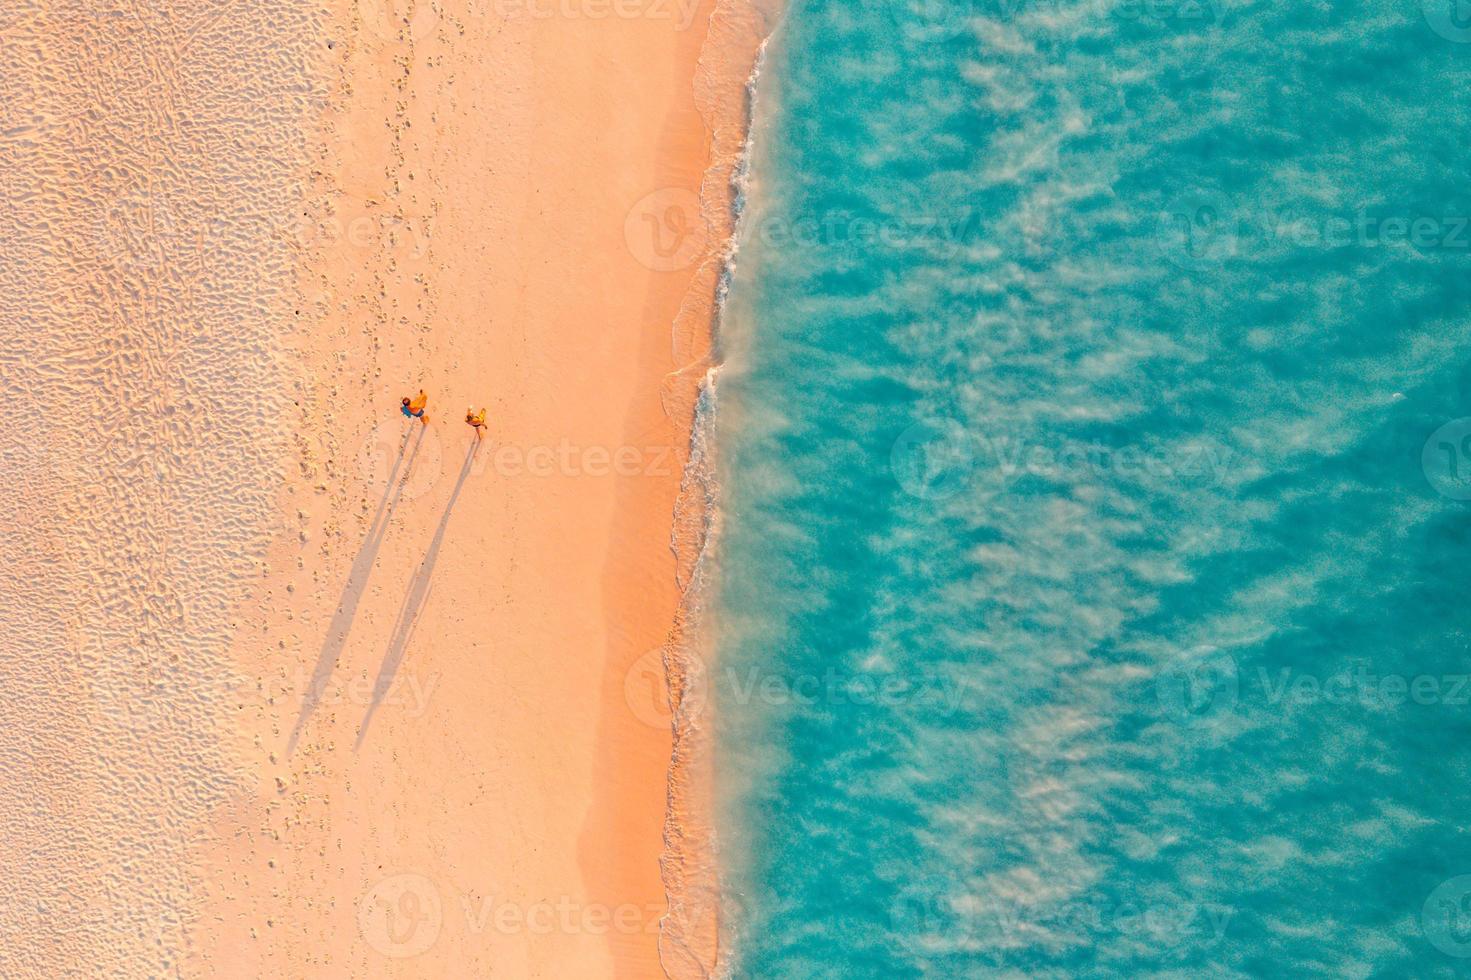 vue aérienne de la magnifique plage avec un couple marchant dans la lumière du coucher du soleil près de la mer turquoise. vue de dessus du paysage de plage d'été, vacances romantiques en couple inspirantes, vacances romantiques. voyage liberté photo